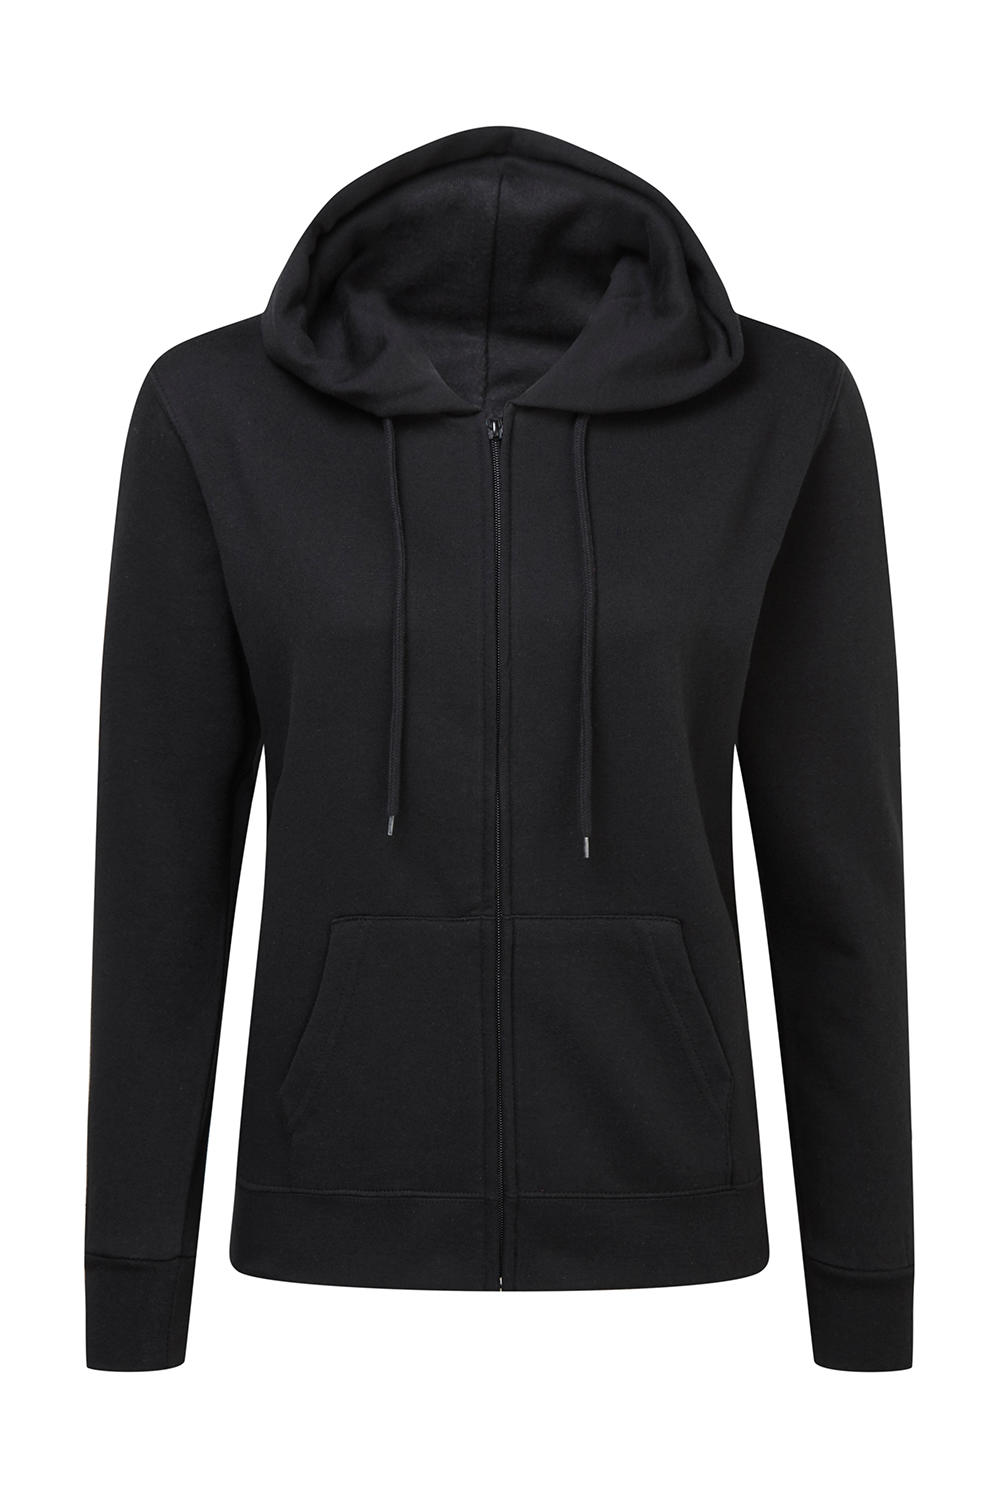  Ladies Zip Hood in Farbe Black